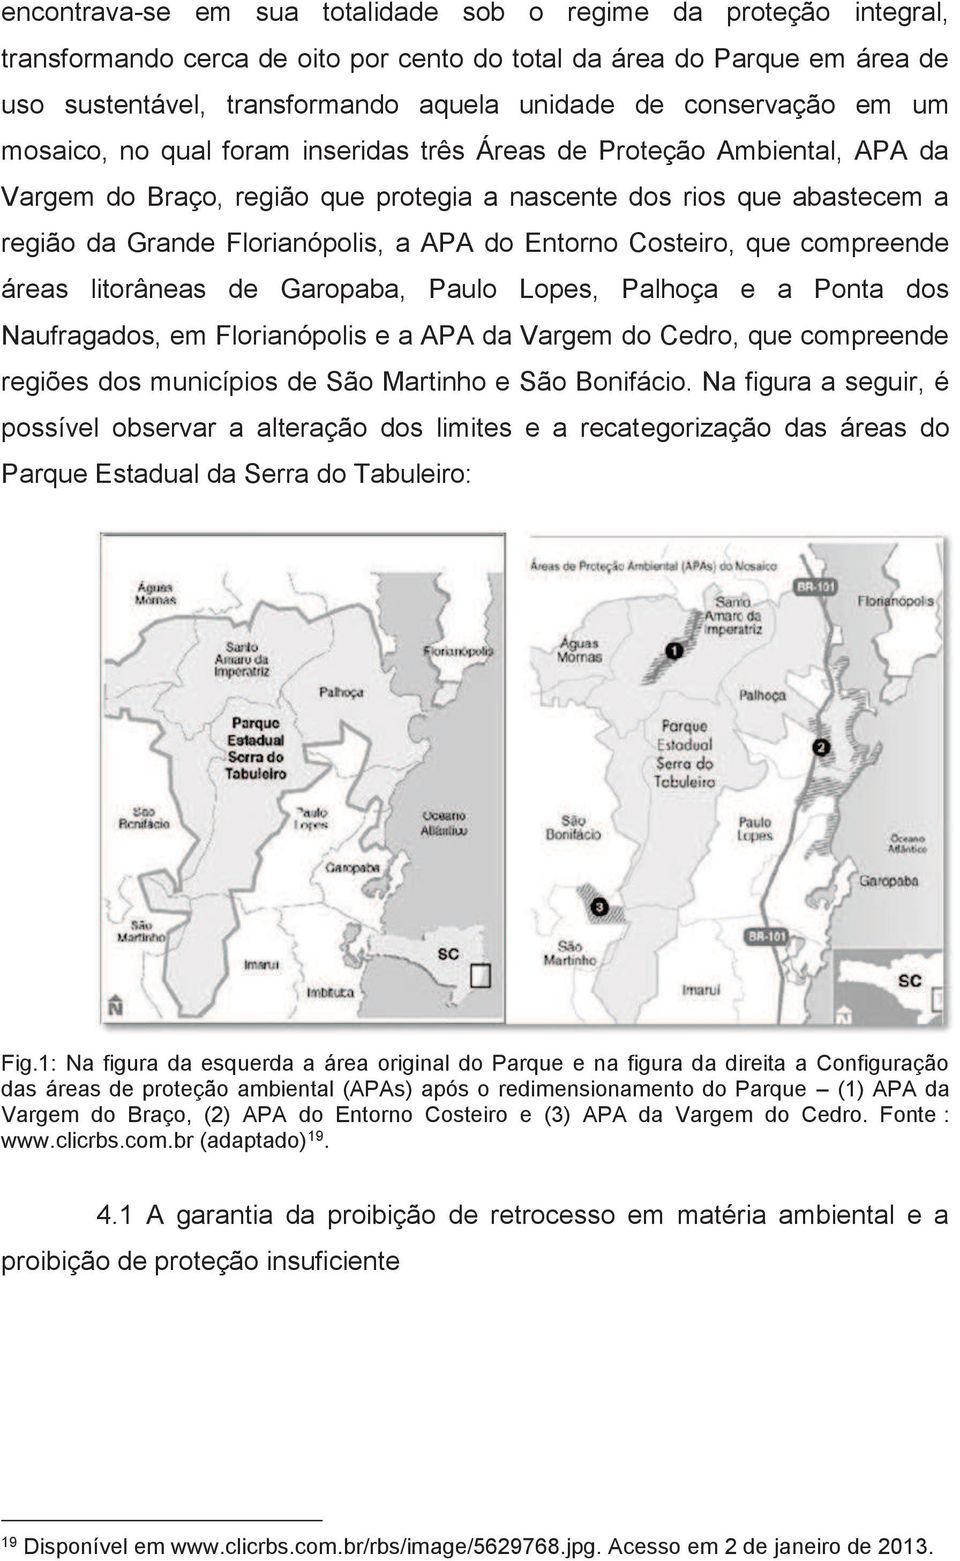 APA do Entorno Costeiro, que compreende áreas litorâneas de Garopaba, Paulo Lopes, Palhoça e a Ponta dos Naufragados, em Florianópolis e a APA da Vargem do Cedro, que compreende regiões dos